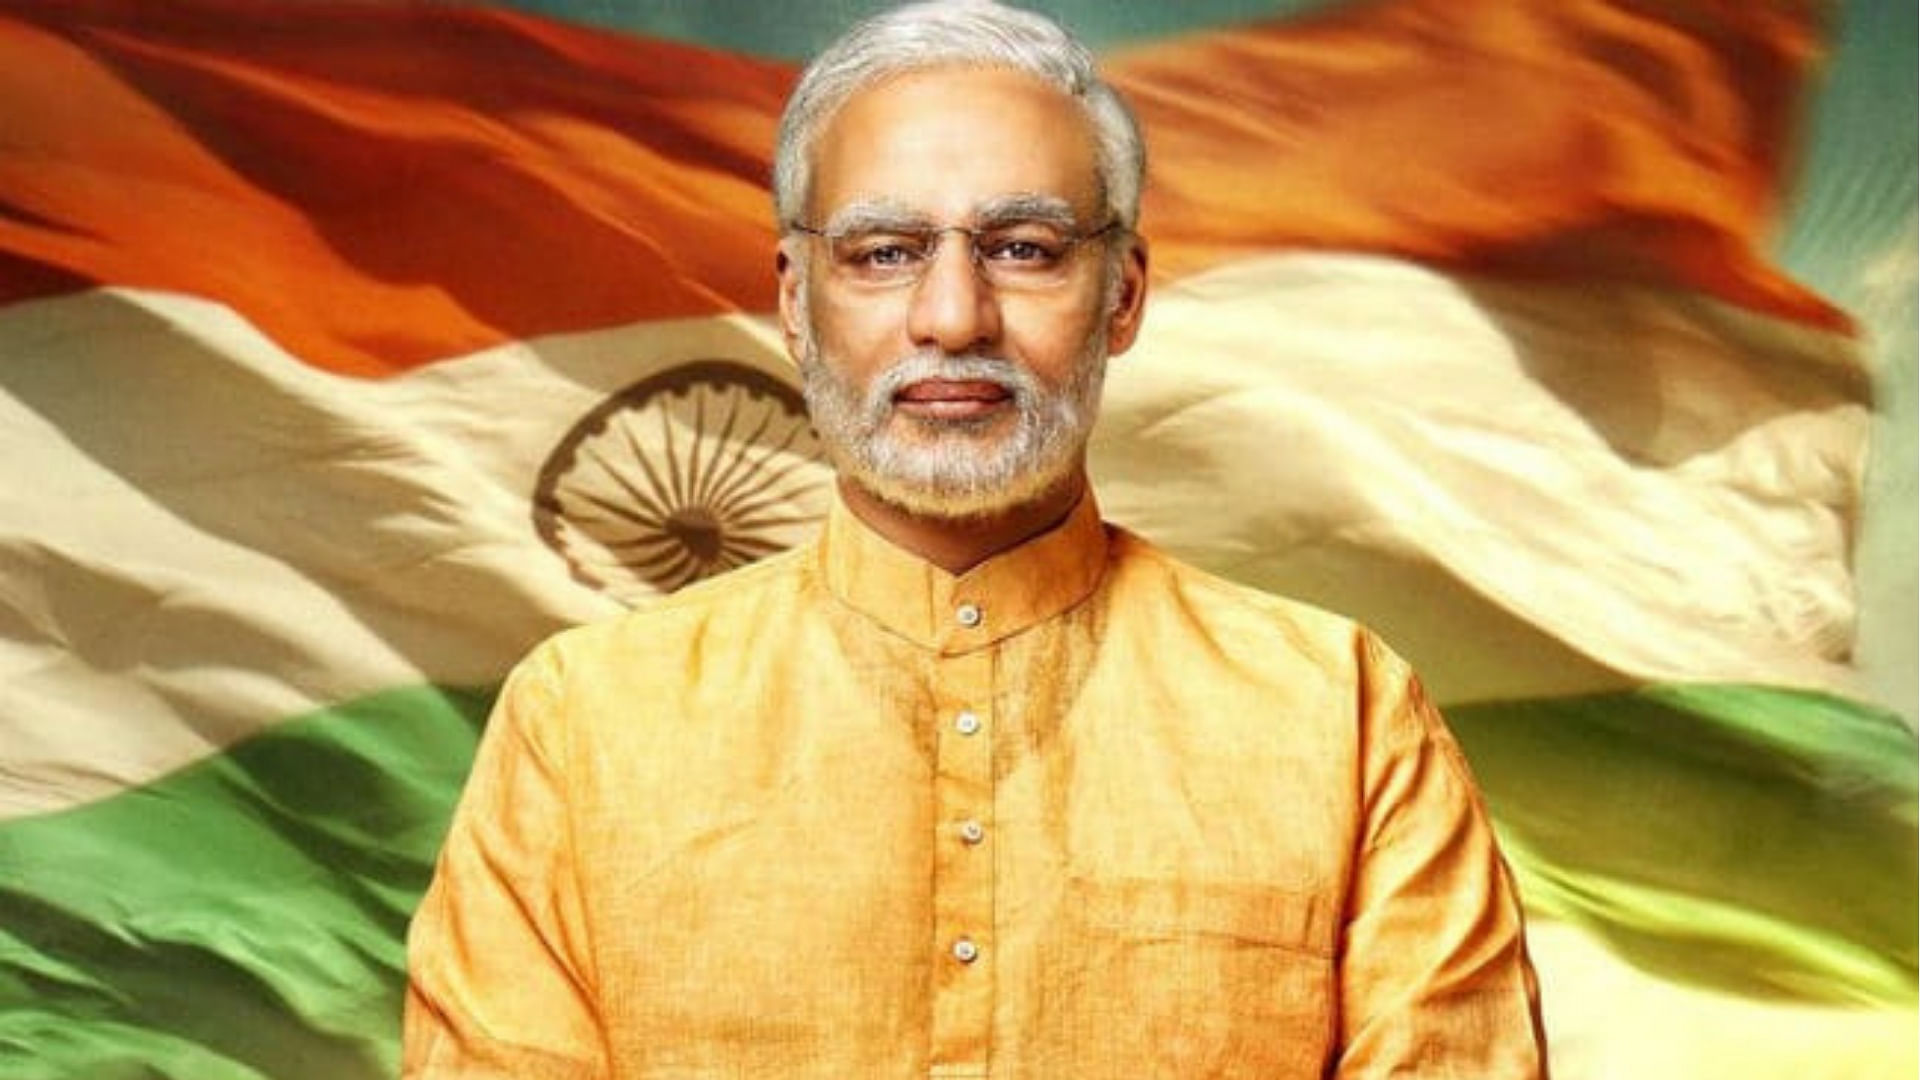 Vivek Oberoi as PM Modi in the biopic <i>PM Narendra Modi</i>.